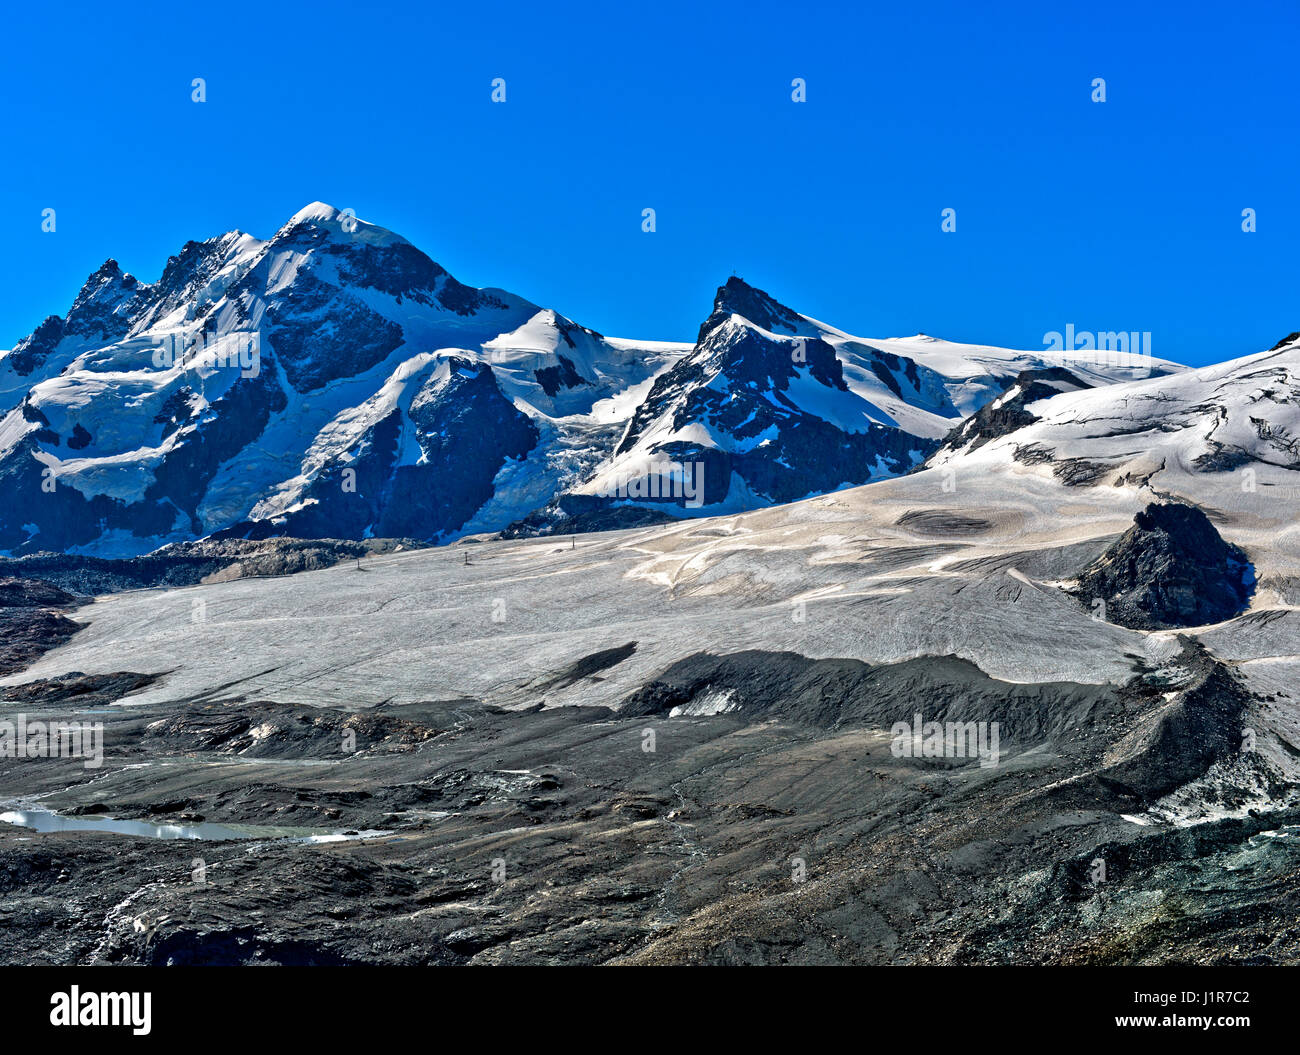 Breithorn and Klein Matterhorn summits, Theodul glacier, Zermatt, Canton of Valais, Switzerland Stock Photo